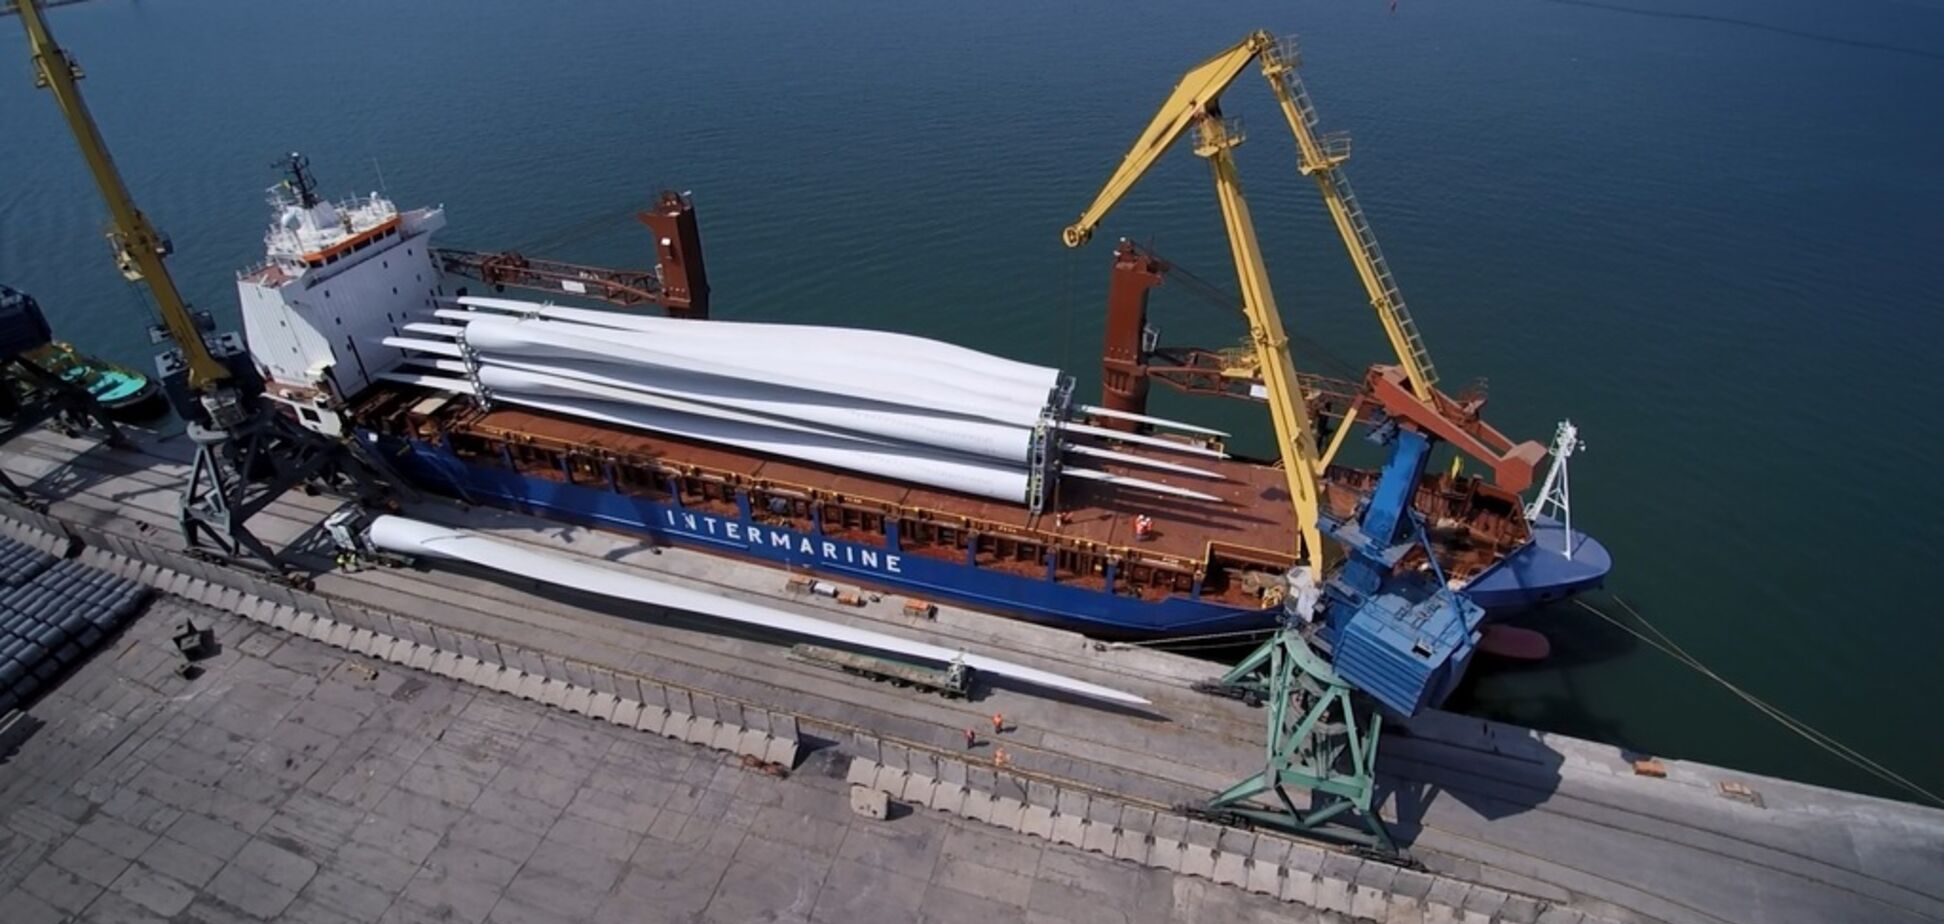 ДТЭК привлек 90 млн евро инвестиций для строительства Приморской ветроэлектростанции